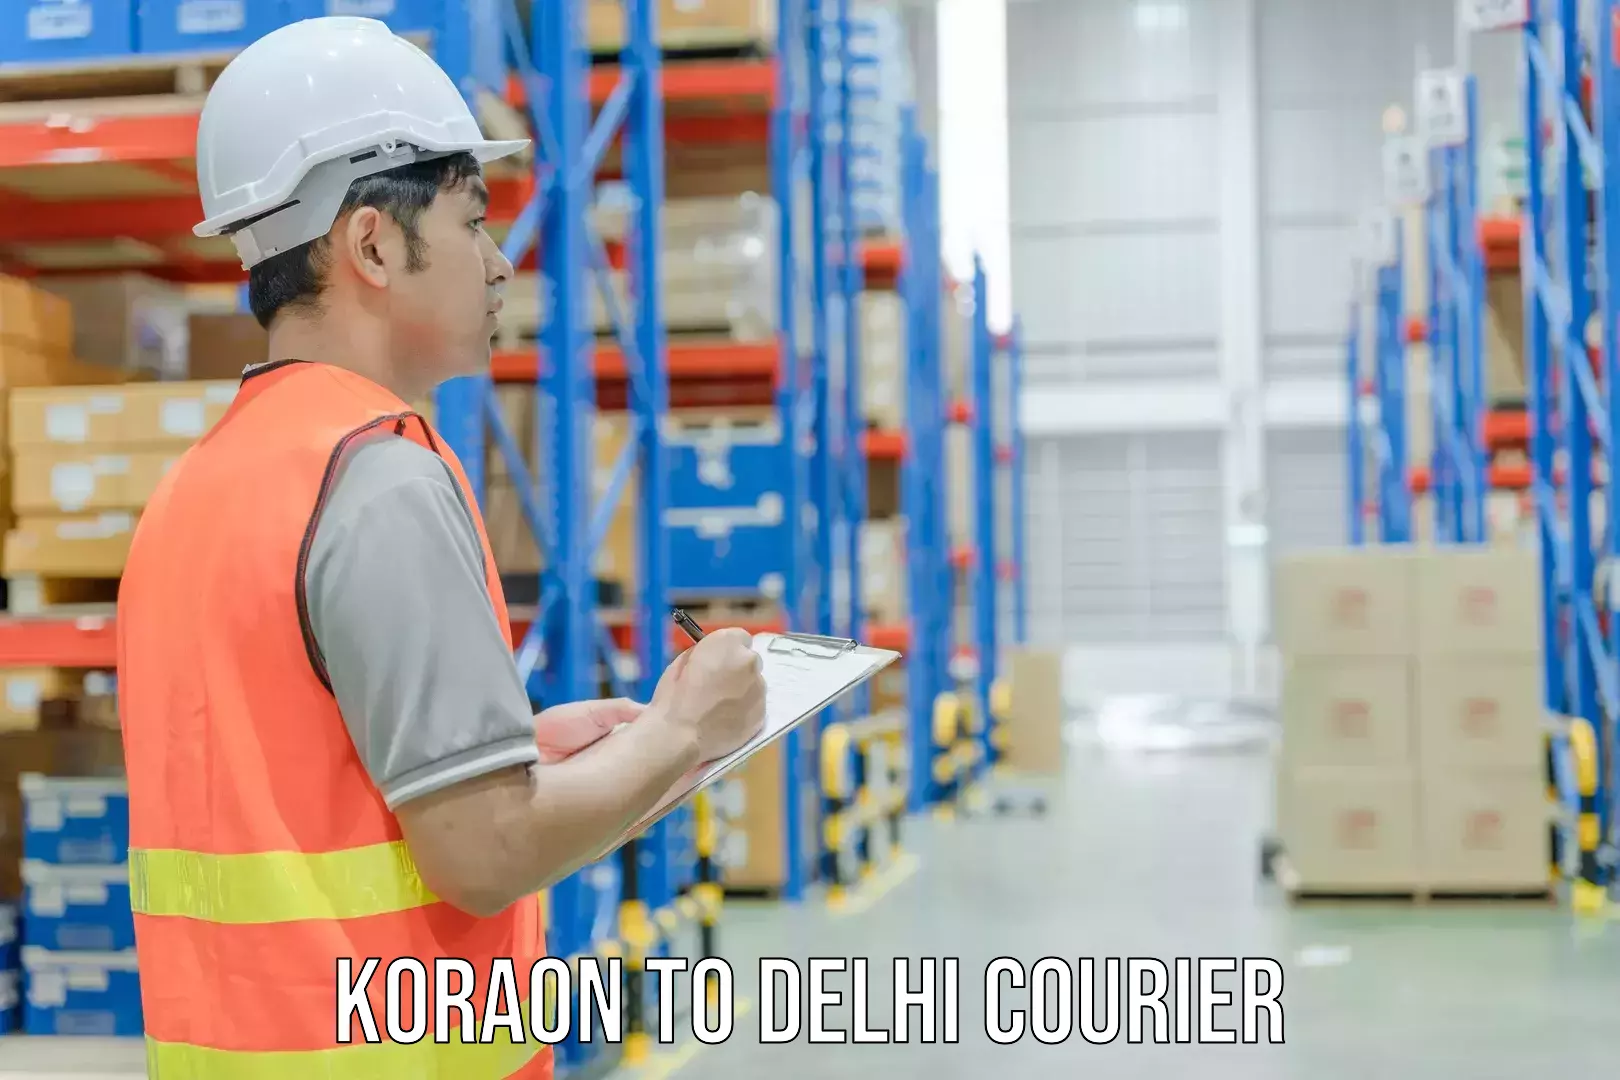 Express shipping in Koraon to NCR